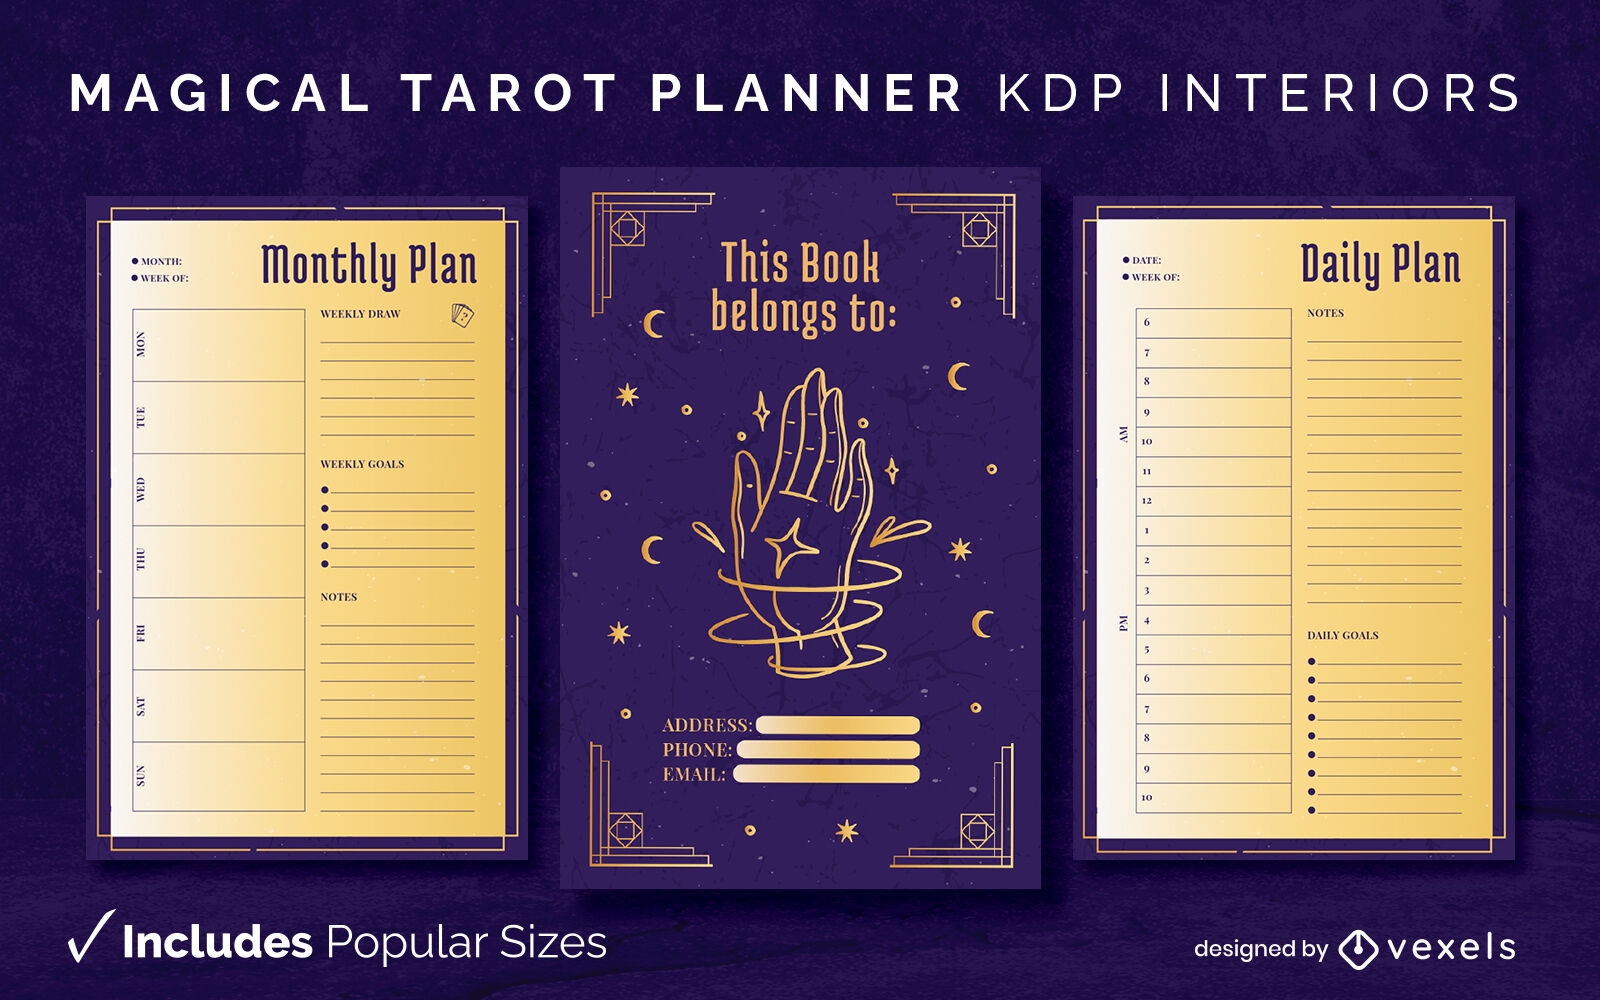 Modelo de interior KDP de planejador de tarô mágico